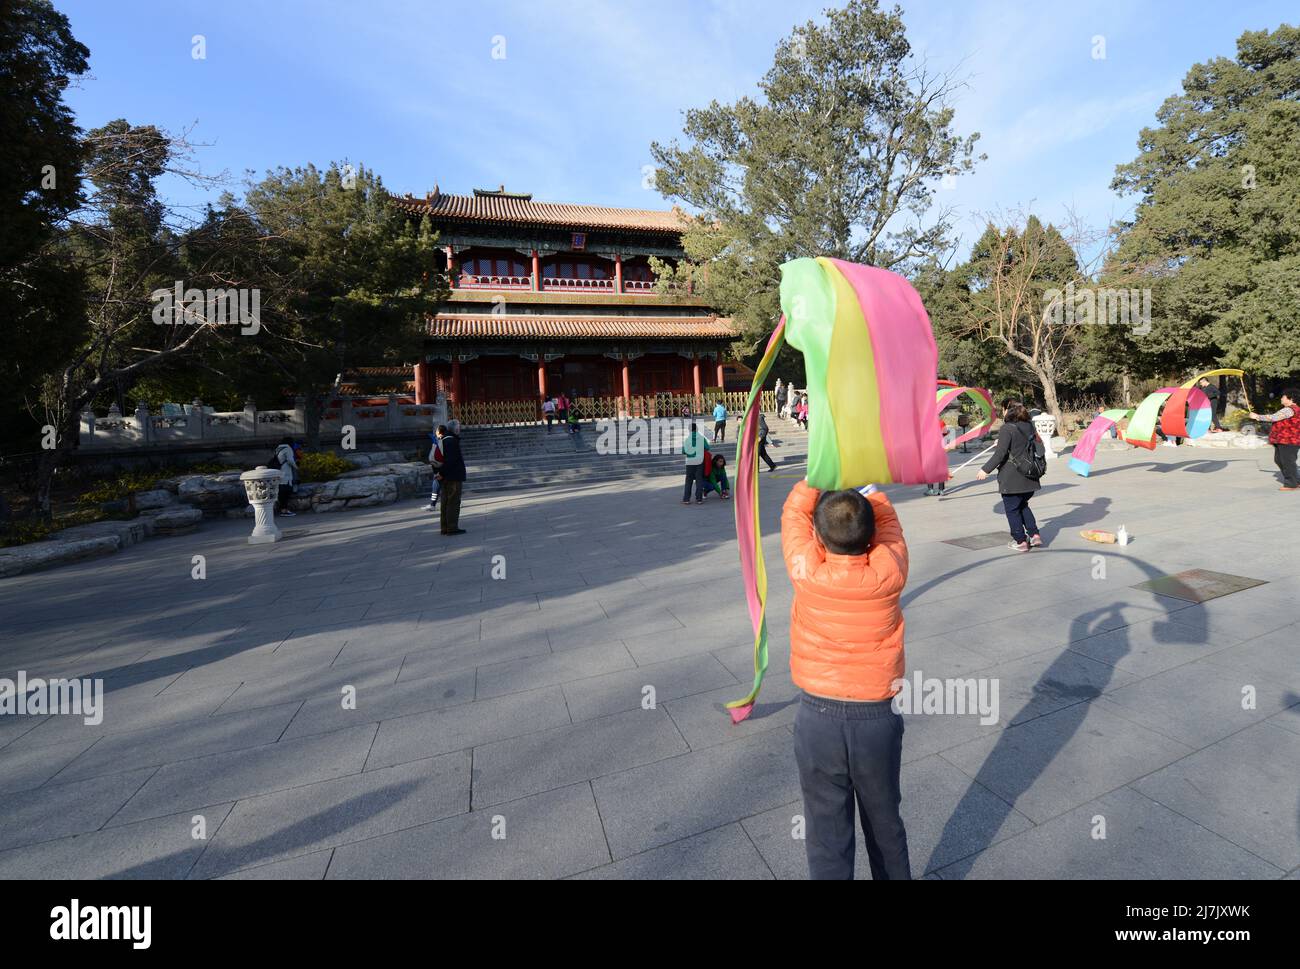 Danza tradizionale bandiera di fronte all'edificio Yiwang nel parco di Jingshan, Pechino, Cina. Foto Stock